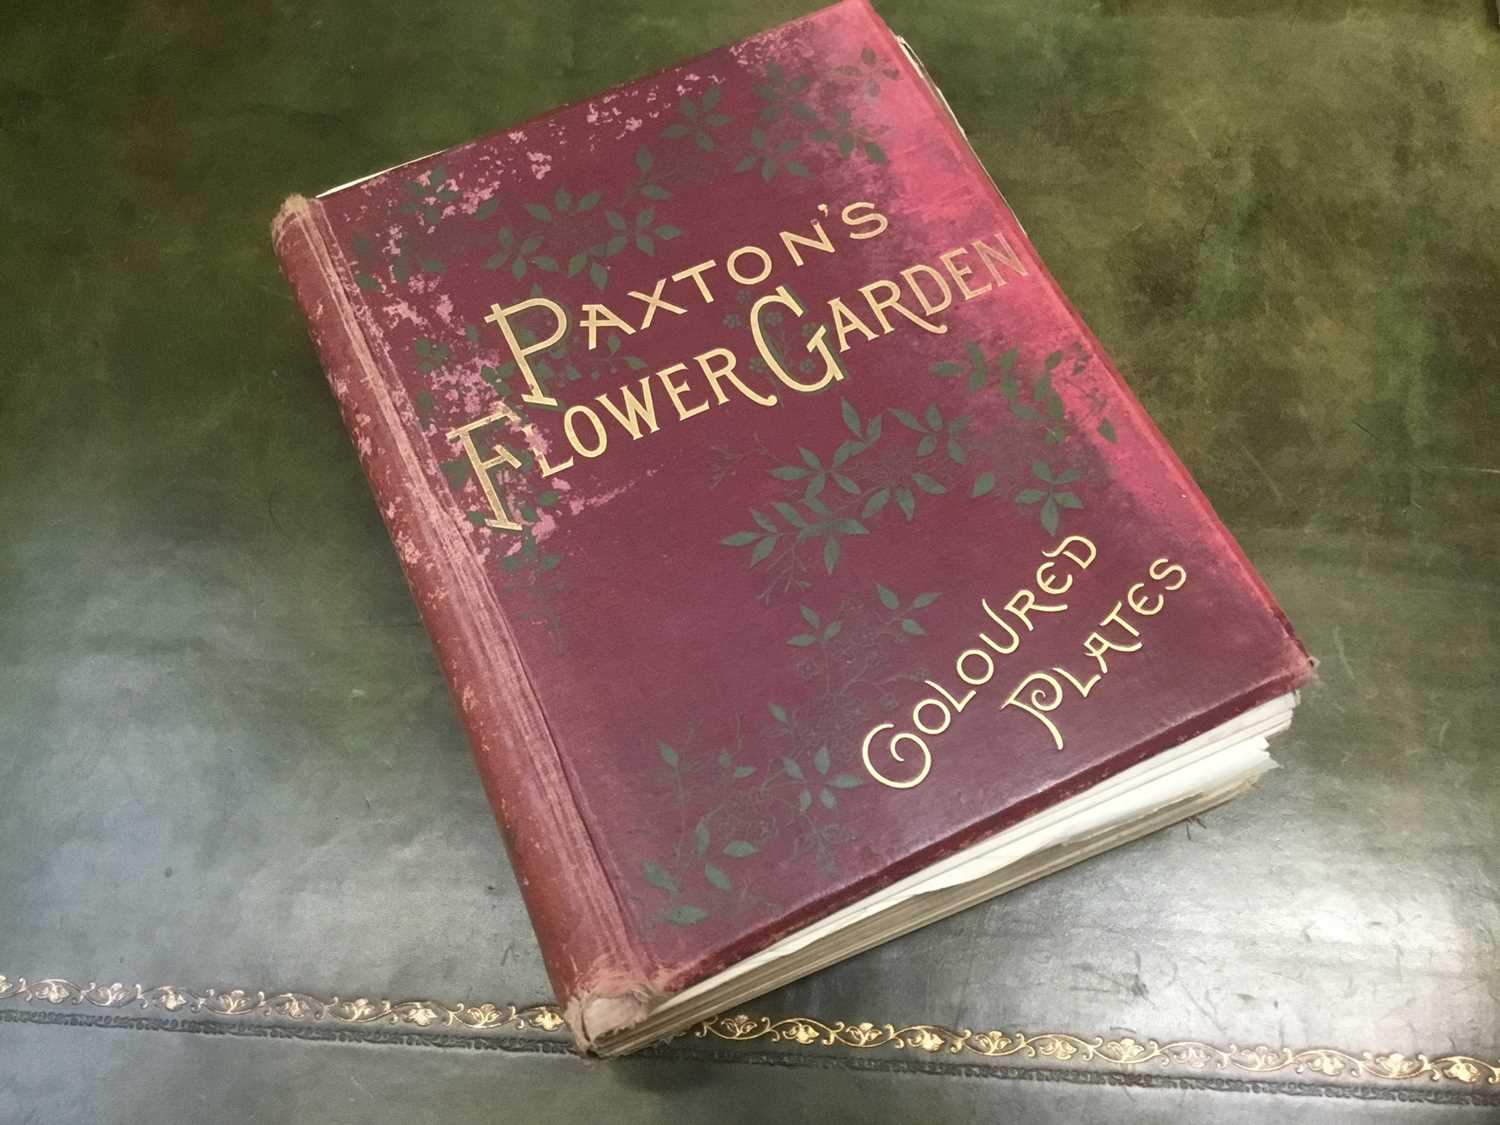 Sir Joseph Paxton - Flower Garden, Vol 1,Cassell, Petter, Galpin & Co. 1882, extensively illustrated